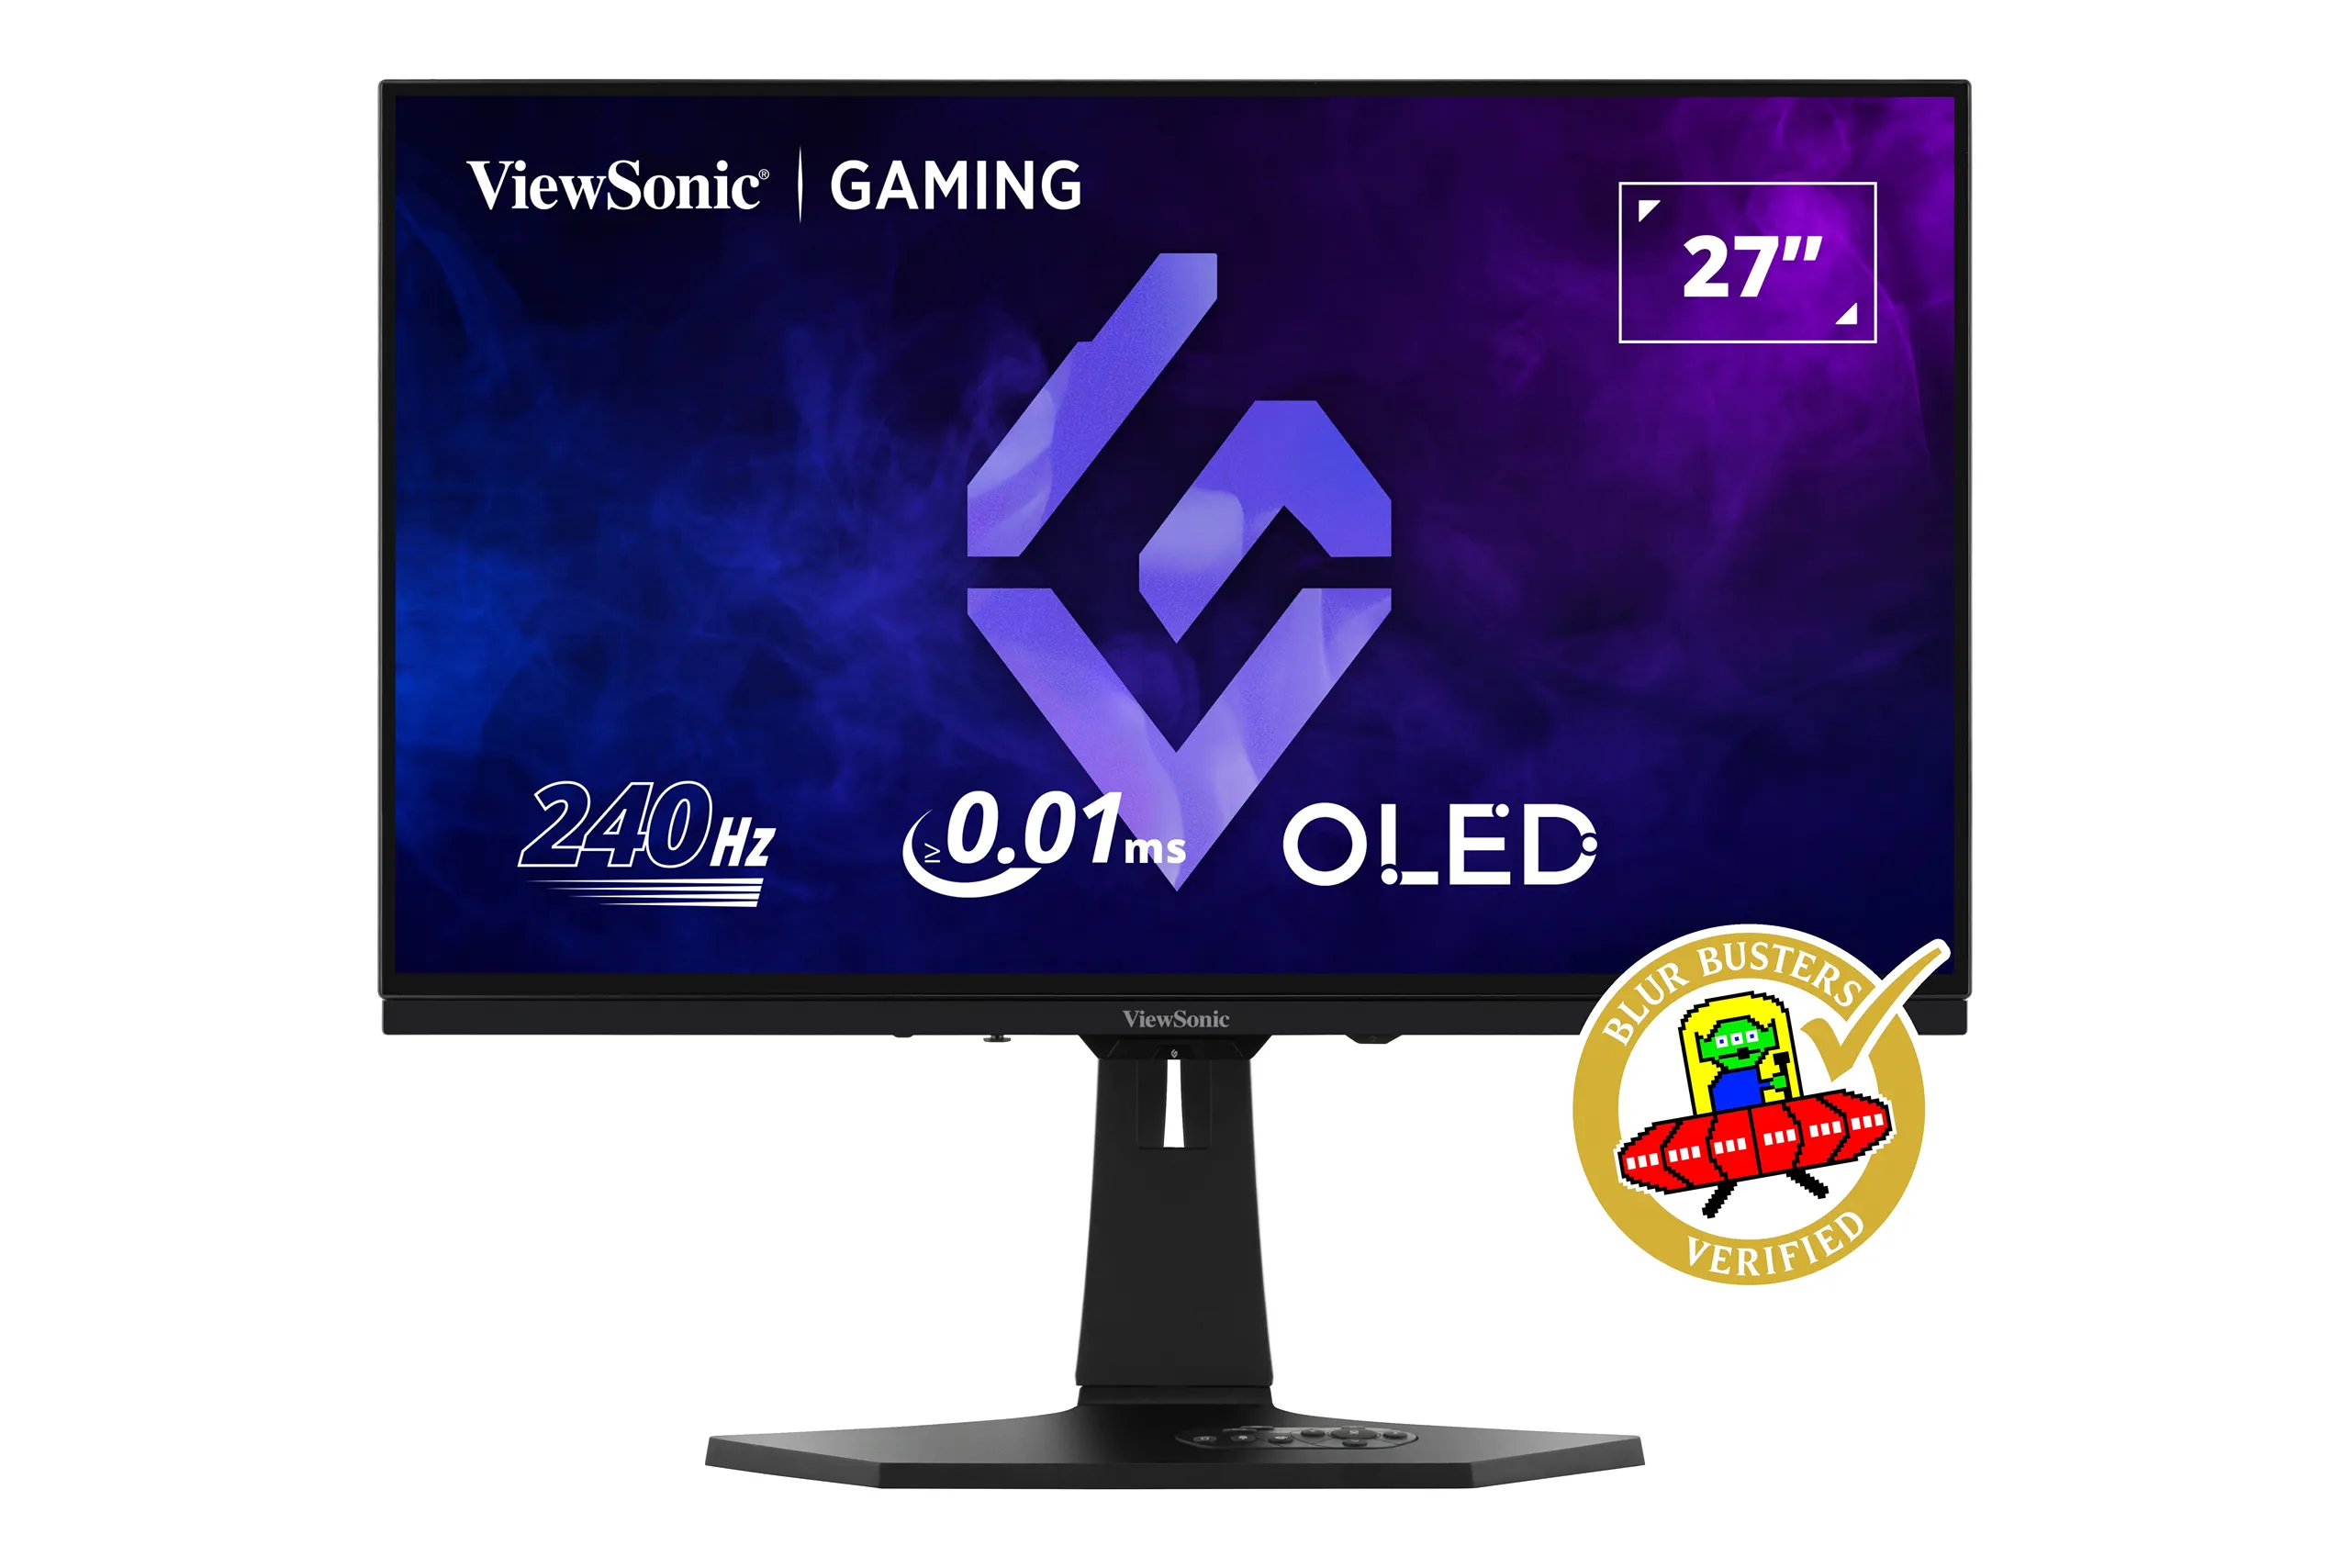 ViewSonic bứt phá với màn hình OLED gaming XG272-2K-OLED: Tần số quét 240Hz, thời gian phản hồi 0.01ms